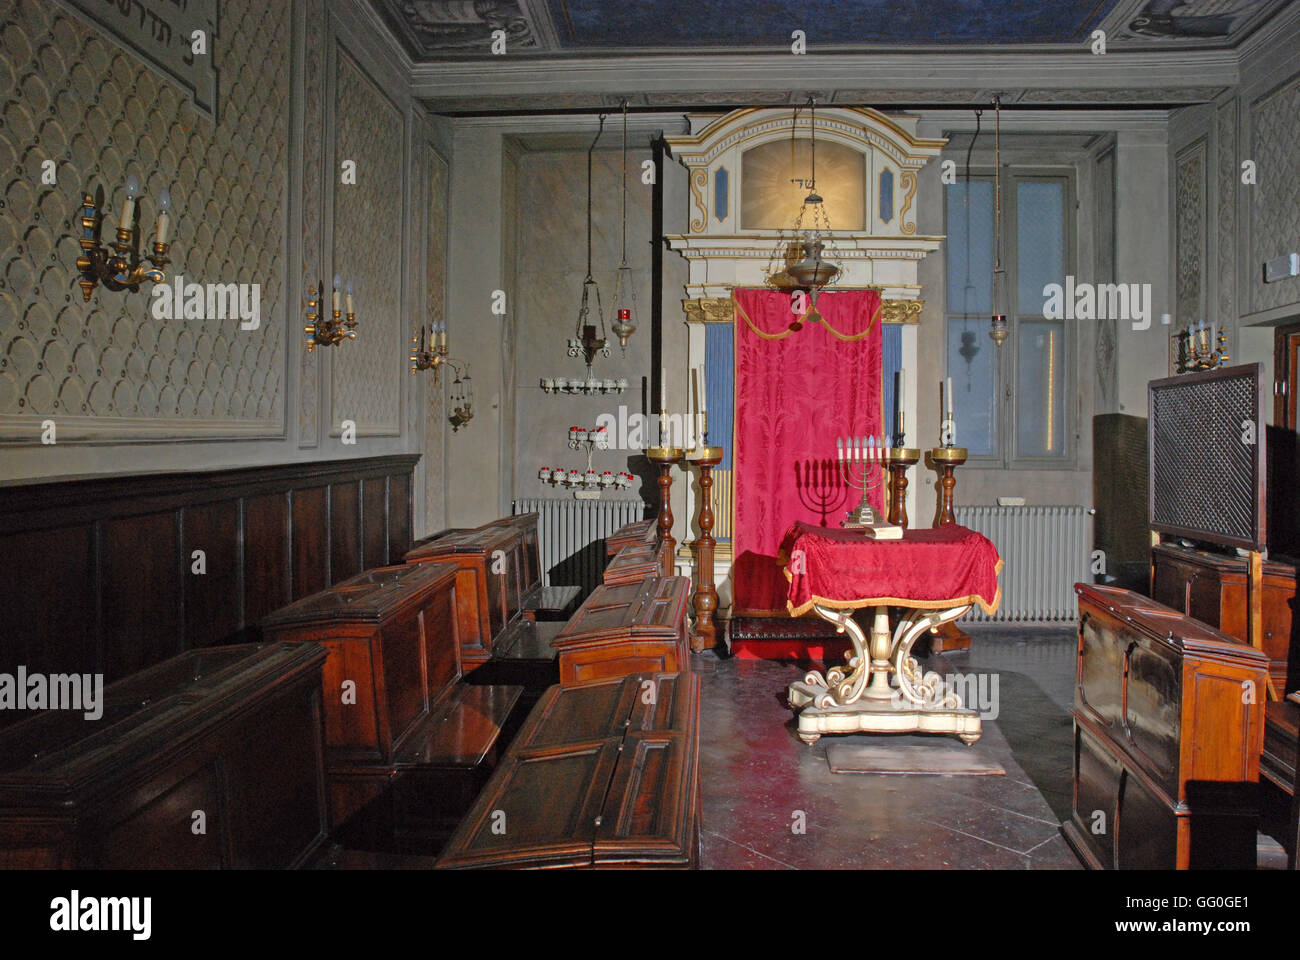 5620. Modena, il 'small' sinagoga, interrior Foto Stock